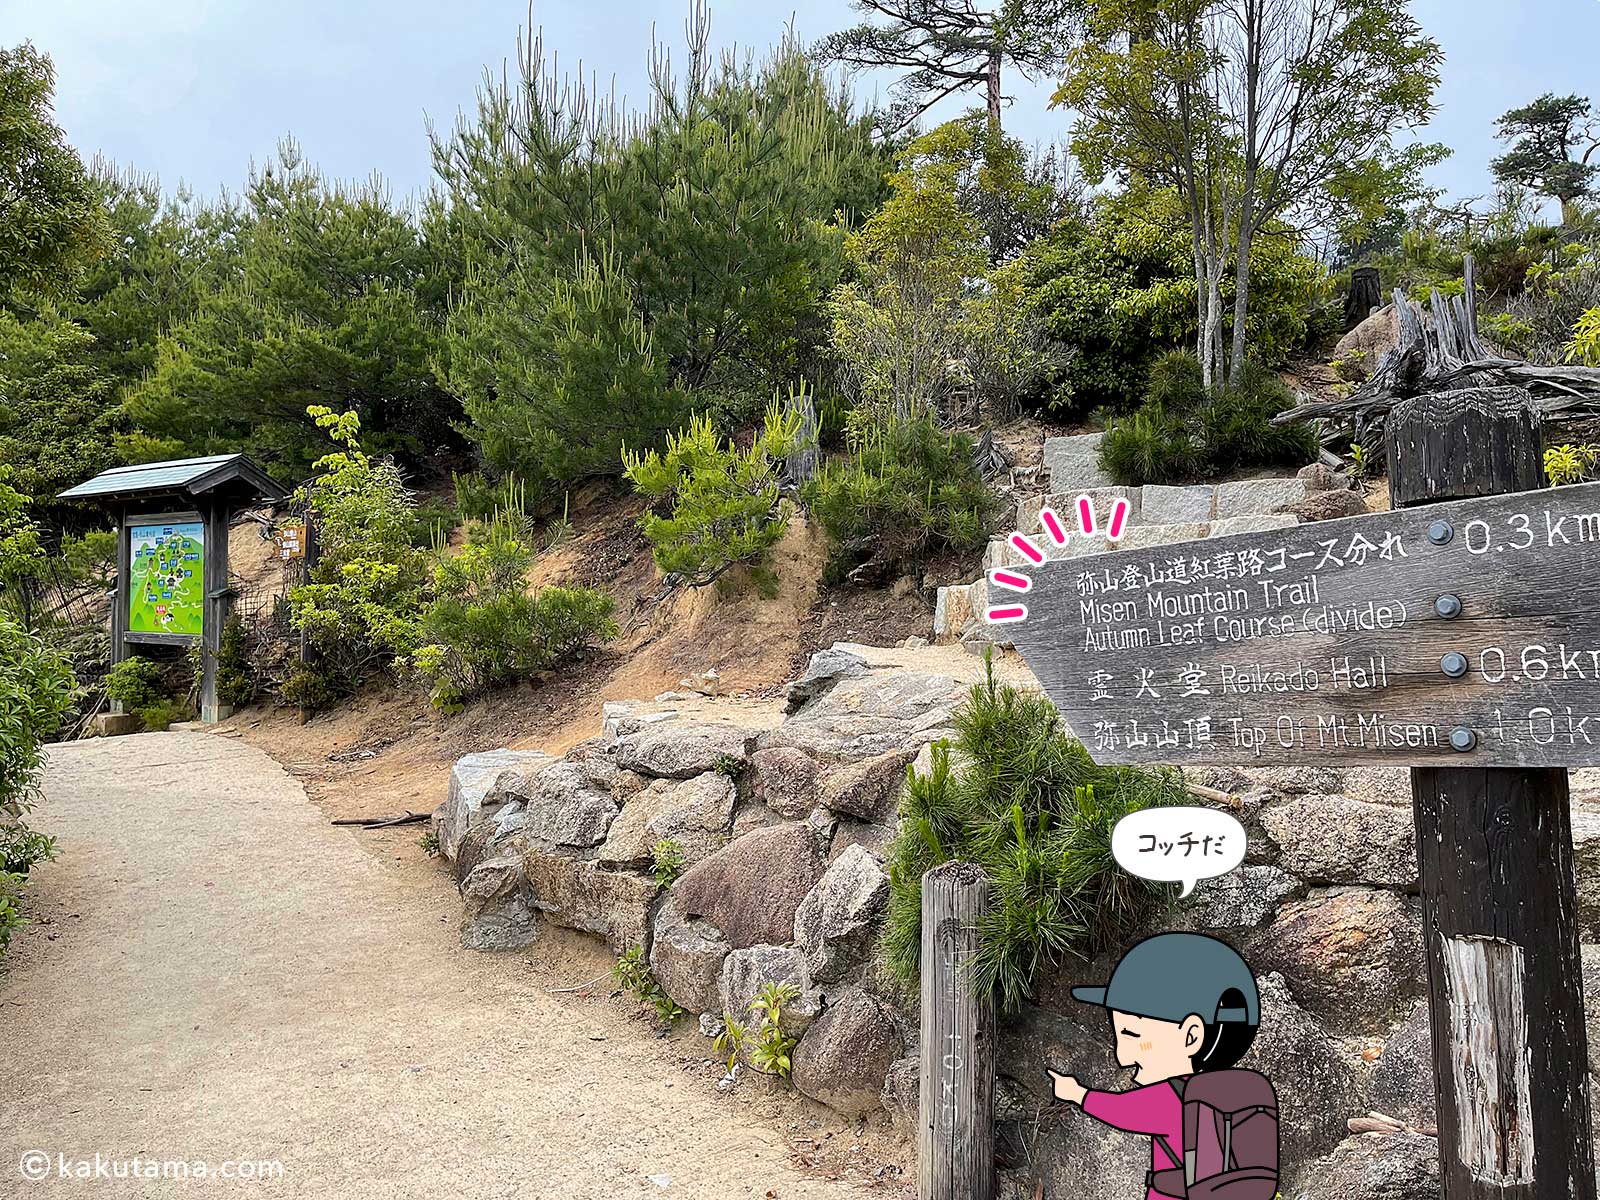 獅子岩駅から弥山への道標の写真と登山者のイラスト